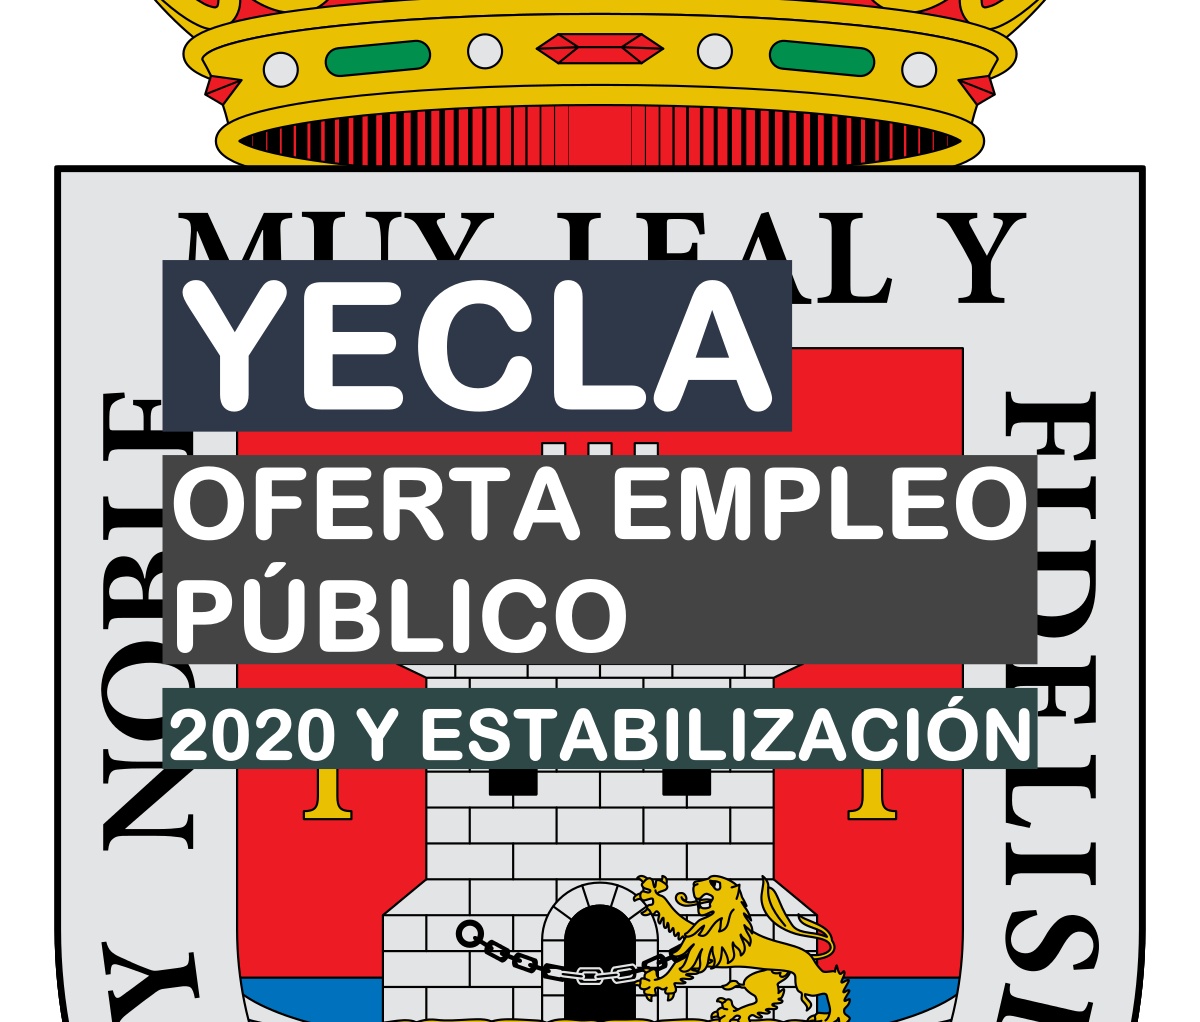 Oferta de empleo público 2020 del Ayuntamiento de Yecla